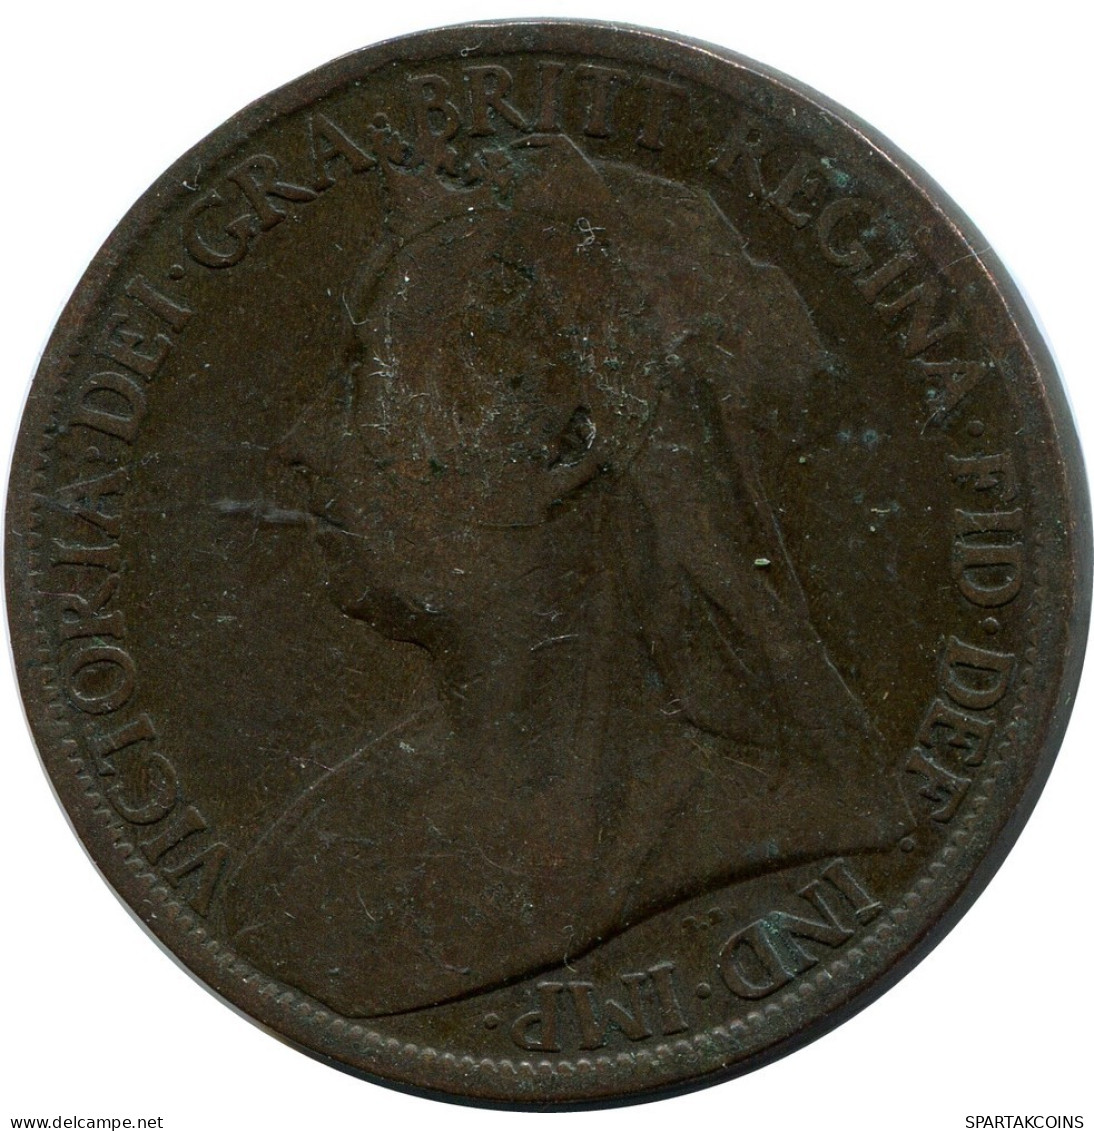 PENNY 1897 UK GROßBRITANNIEN GREAT BRITAIN Münze #AZ748.D.A - D. 1 Penny